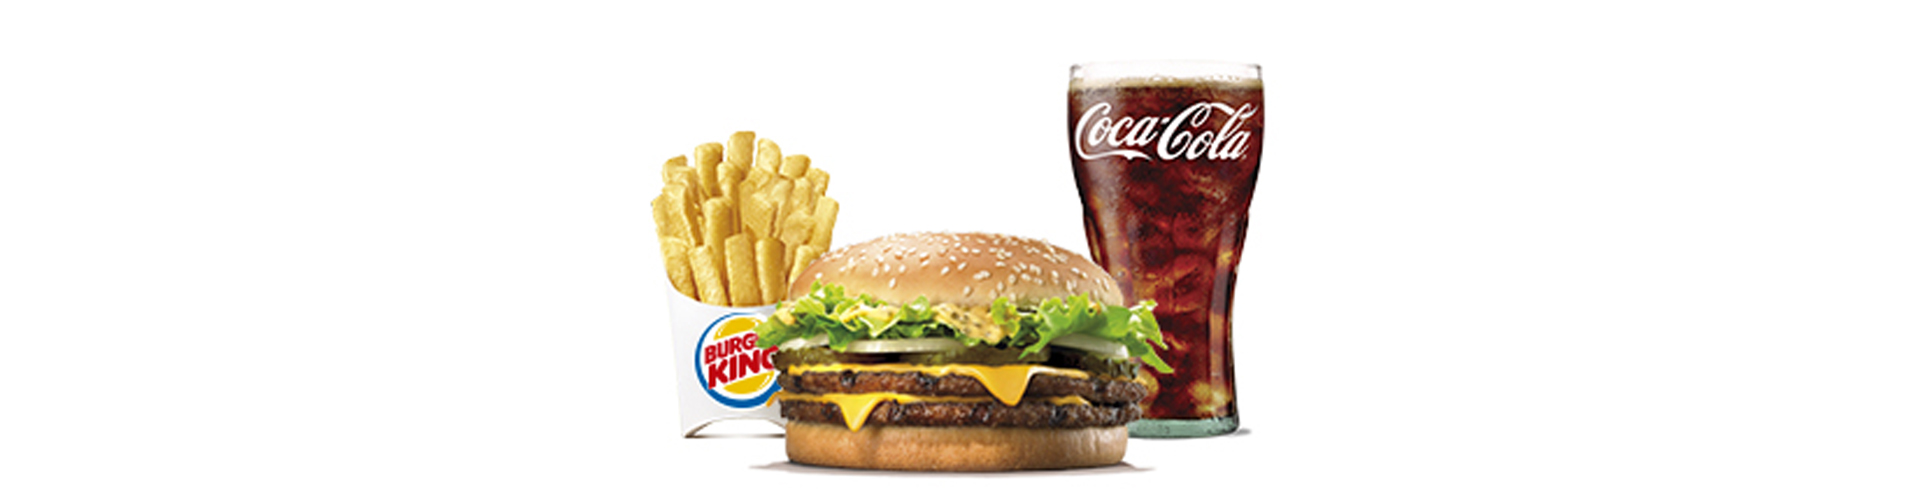 burgerking-40001712-agua-ensalada